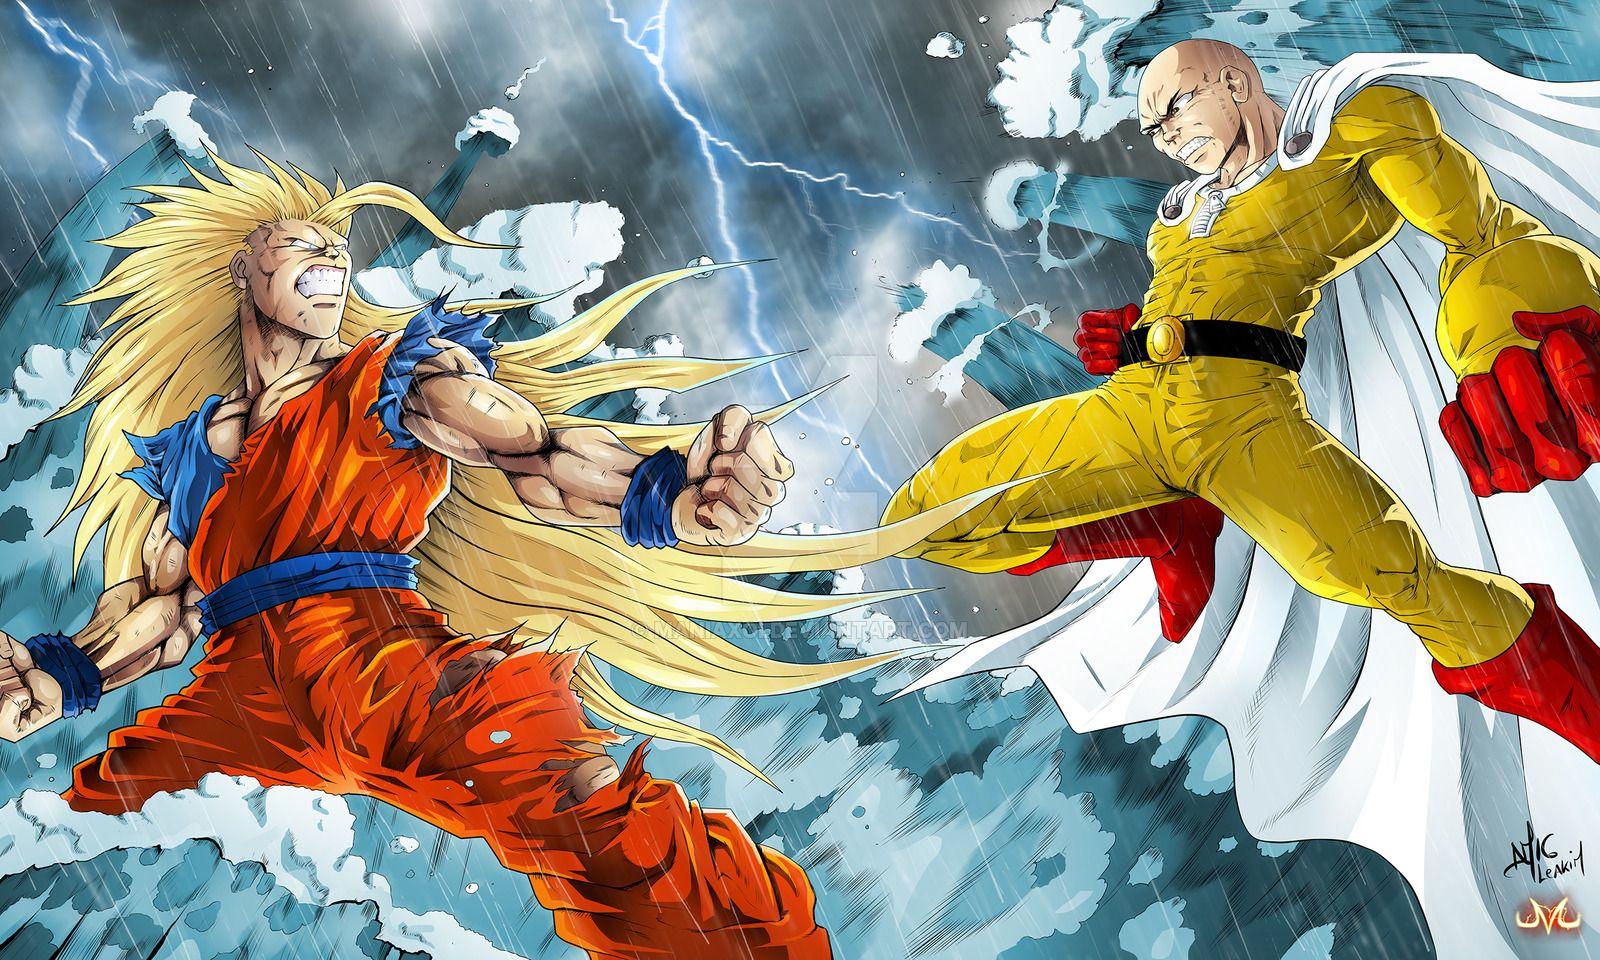 Collab, Goku vs Saitama